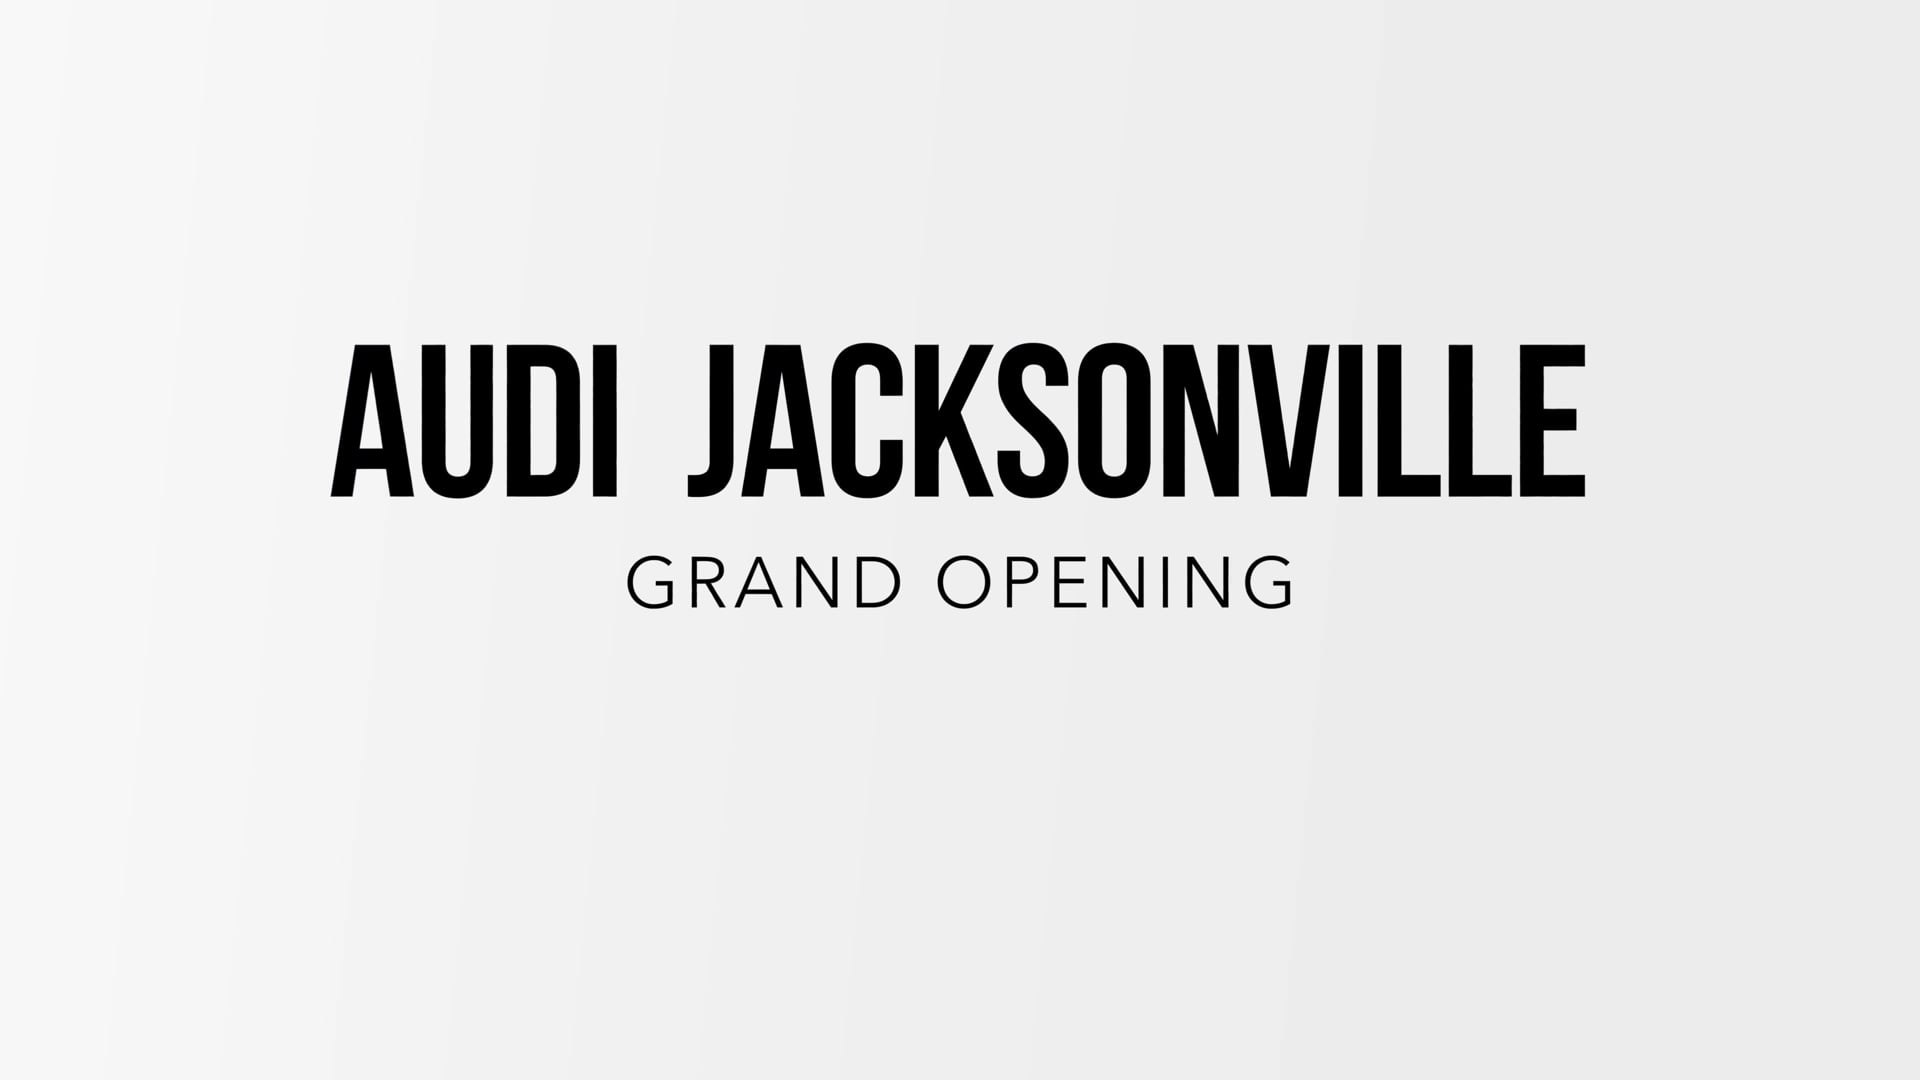 Audi Jacksonville Grand Opening - New Logo